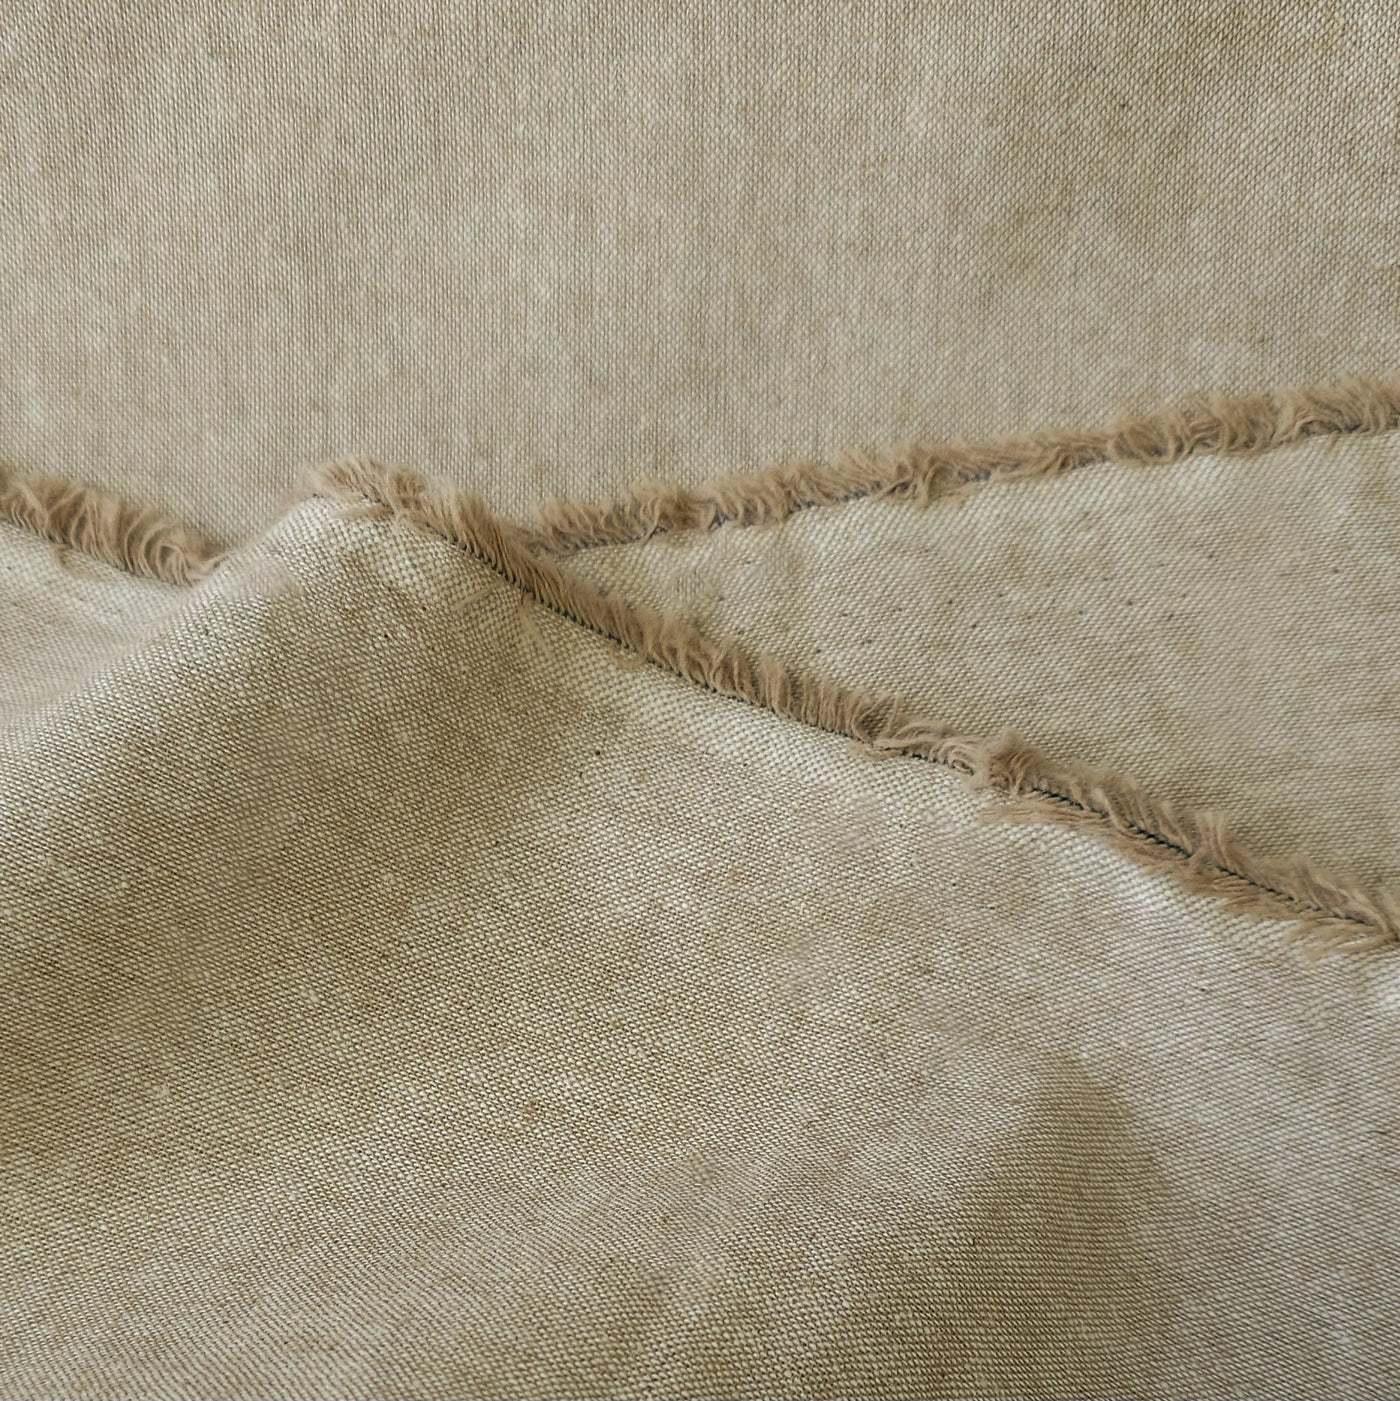 Essex Yarn Dyed Linen & Cotton Blend | By Robert Kaufman